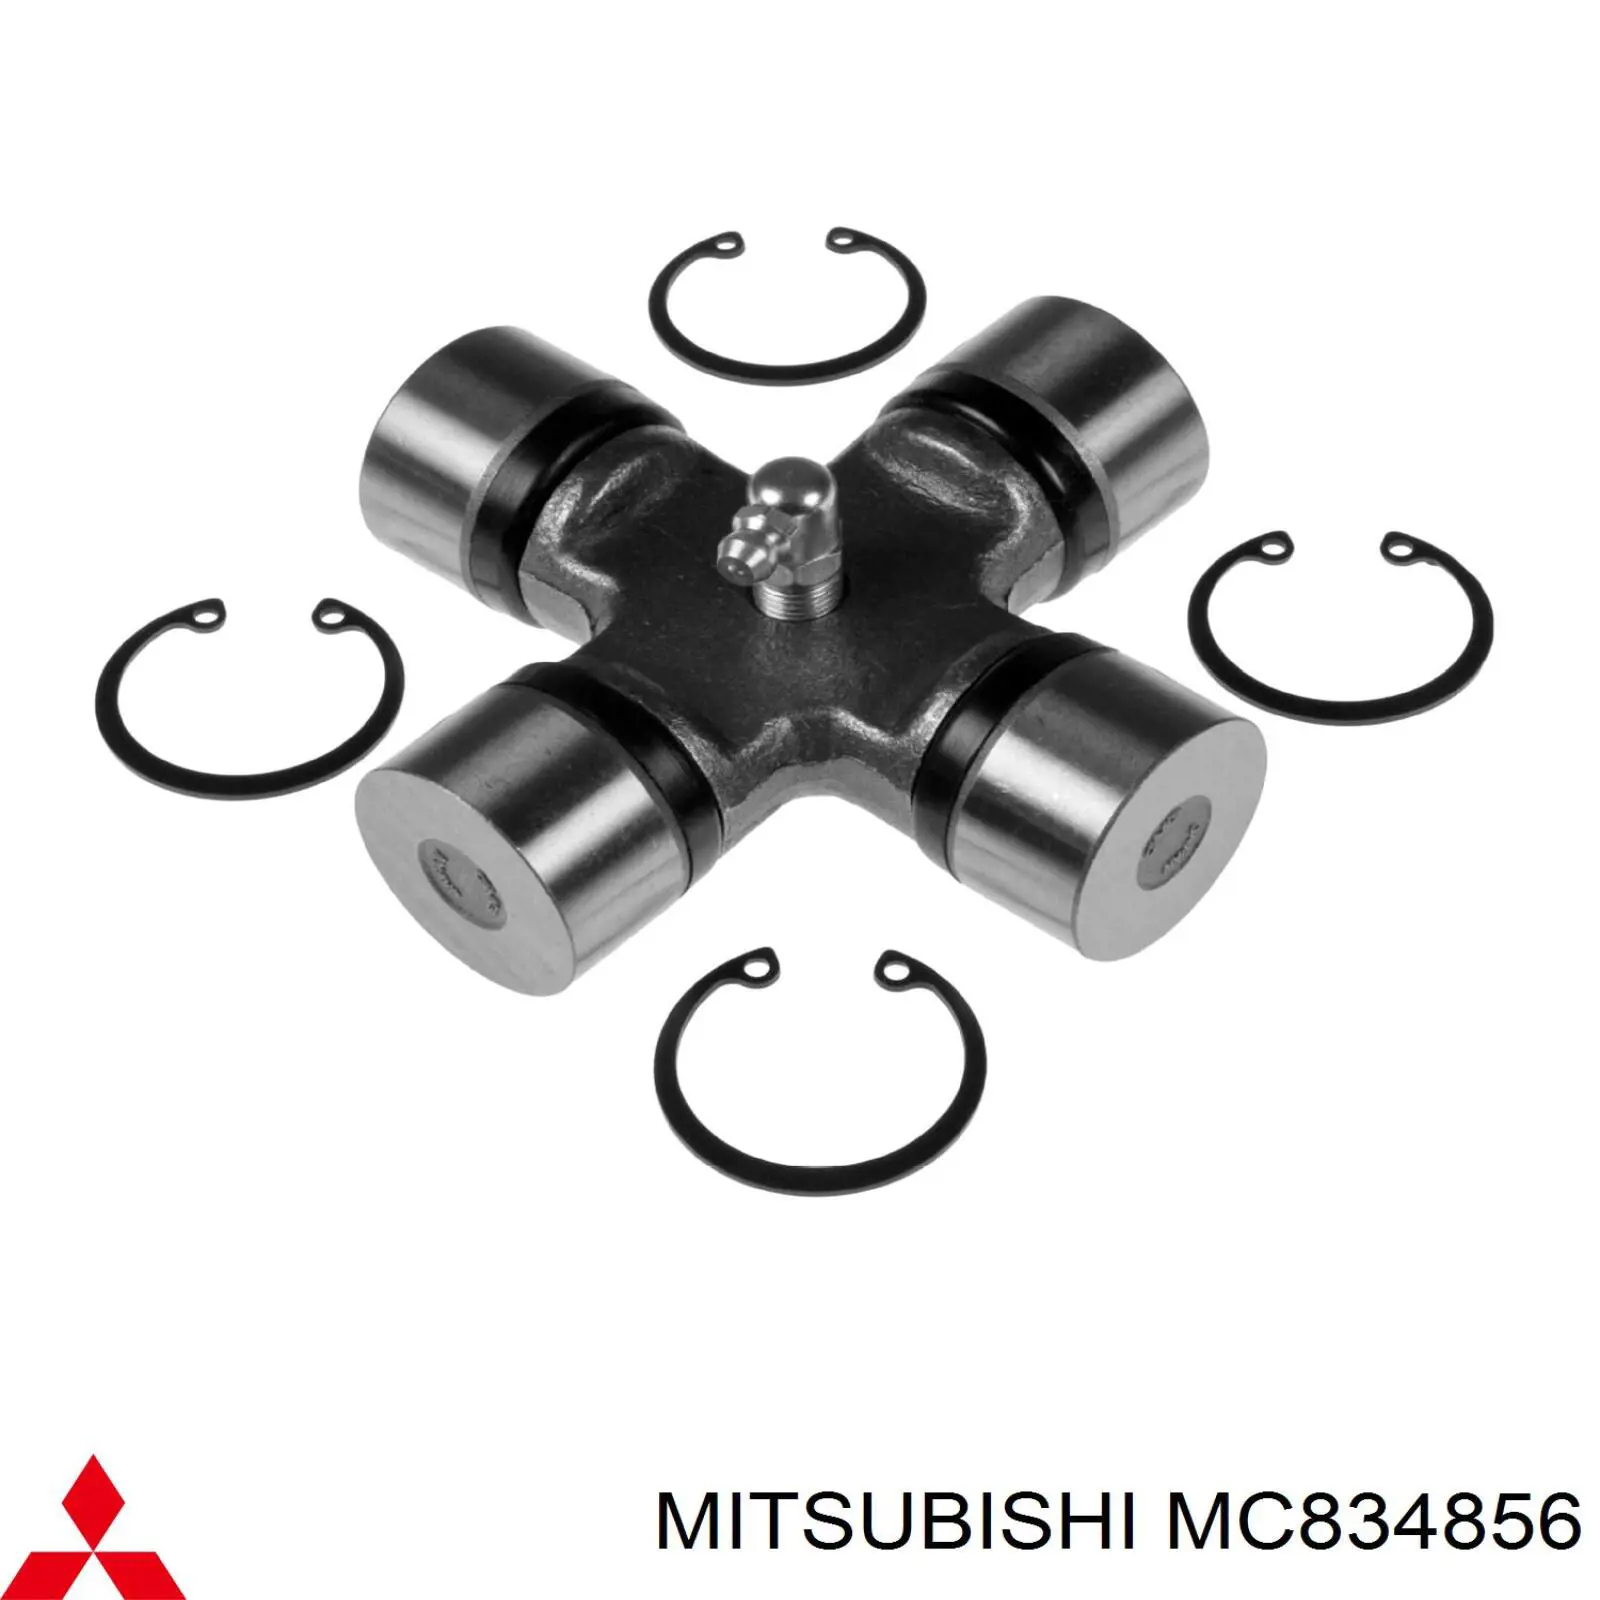 MC834856 Mitsubishi крестовина карданного вала заднего